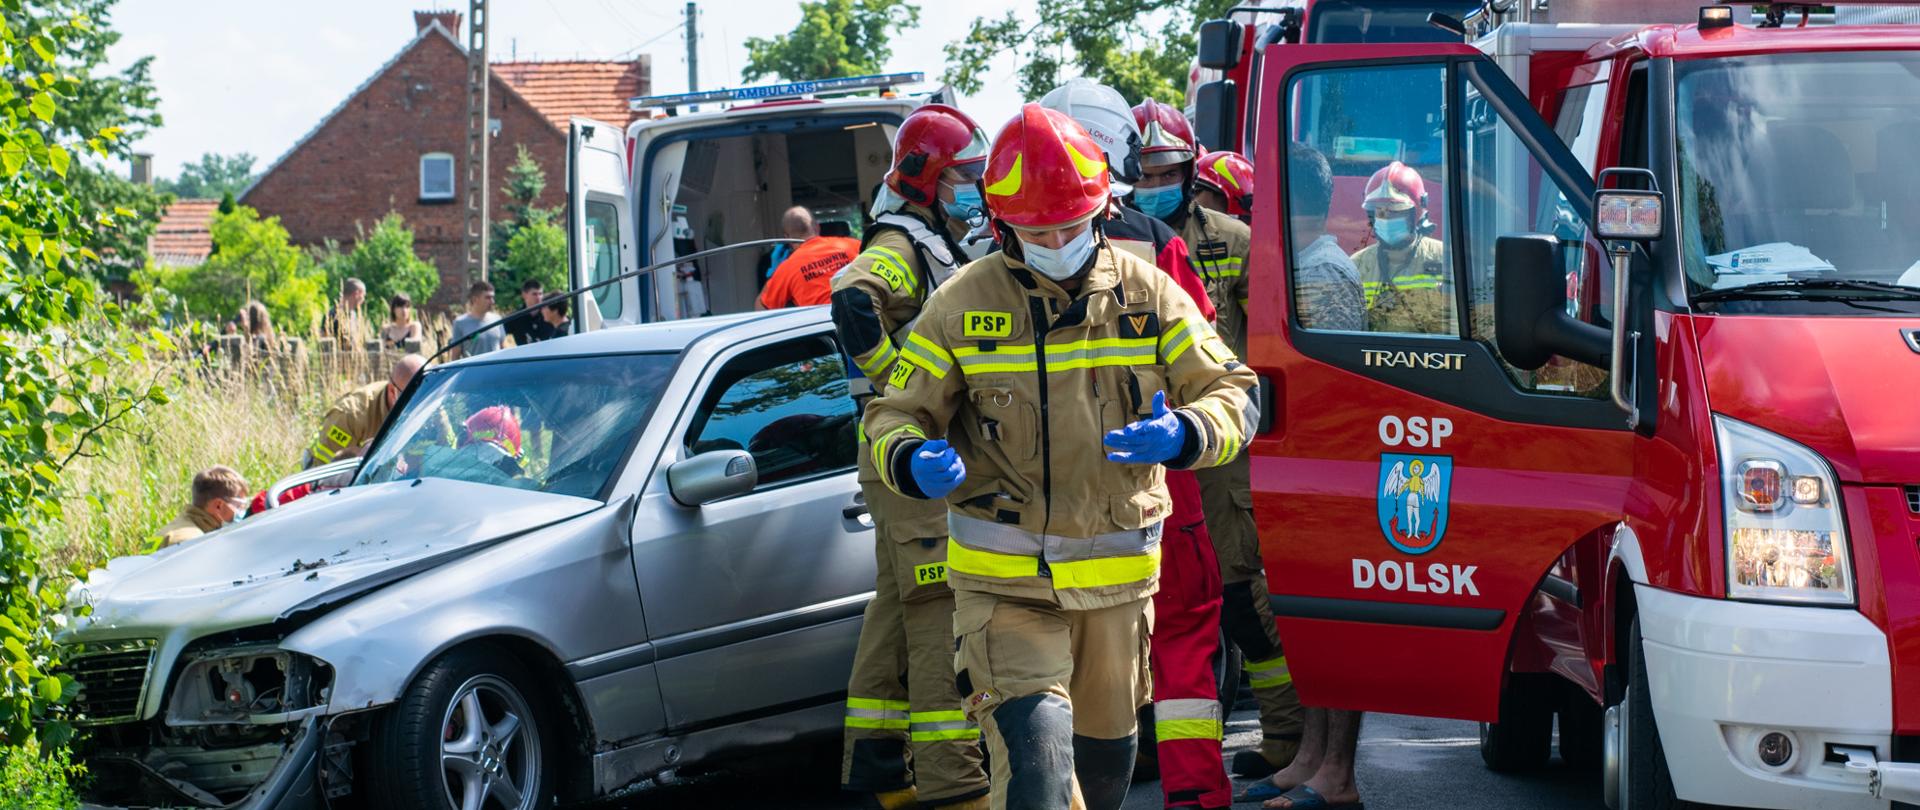 Na zdjęciu rozbity samochód osobowy, zespół ratownictwa medycznego oraz zastęp OSP Dolsk, strażacy i ratownicy medyczni podczas swoich czynności oraz strażak idący 